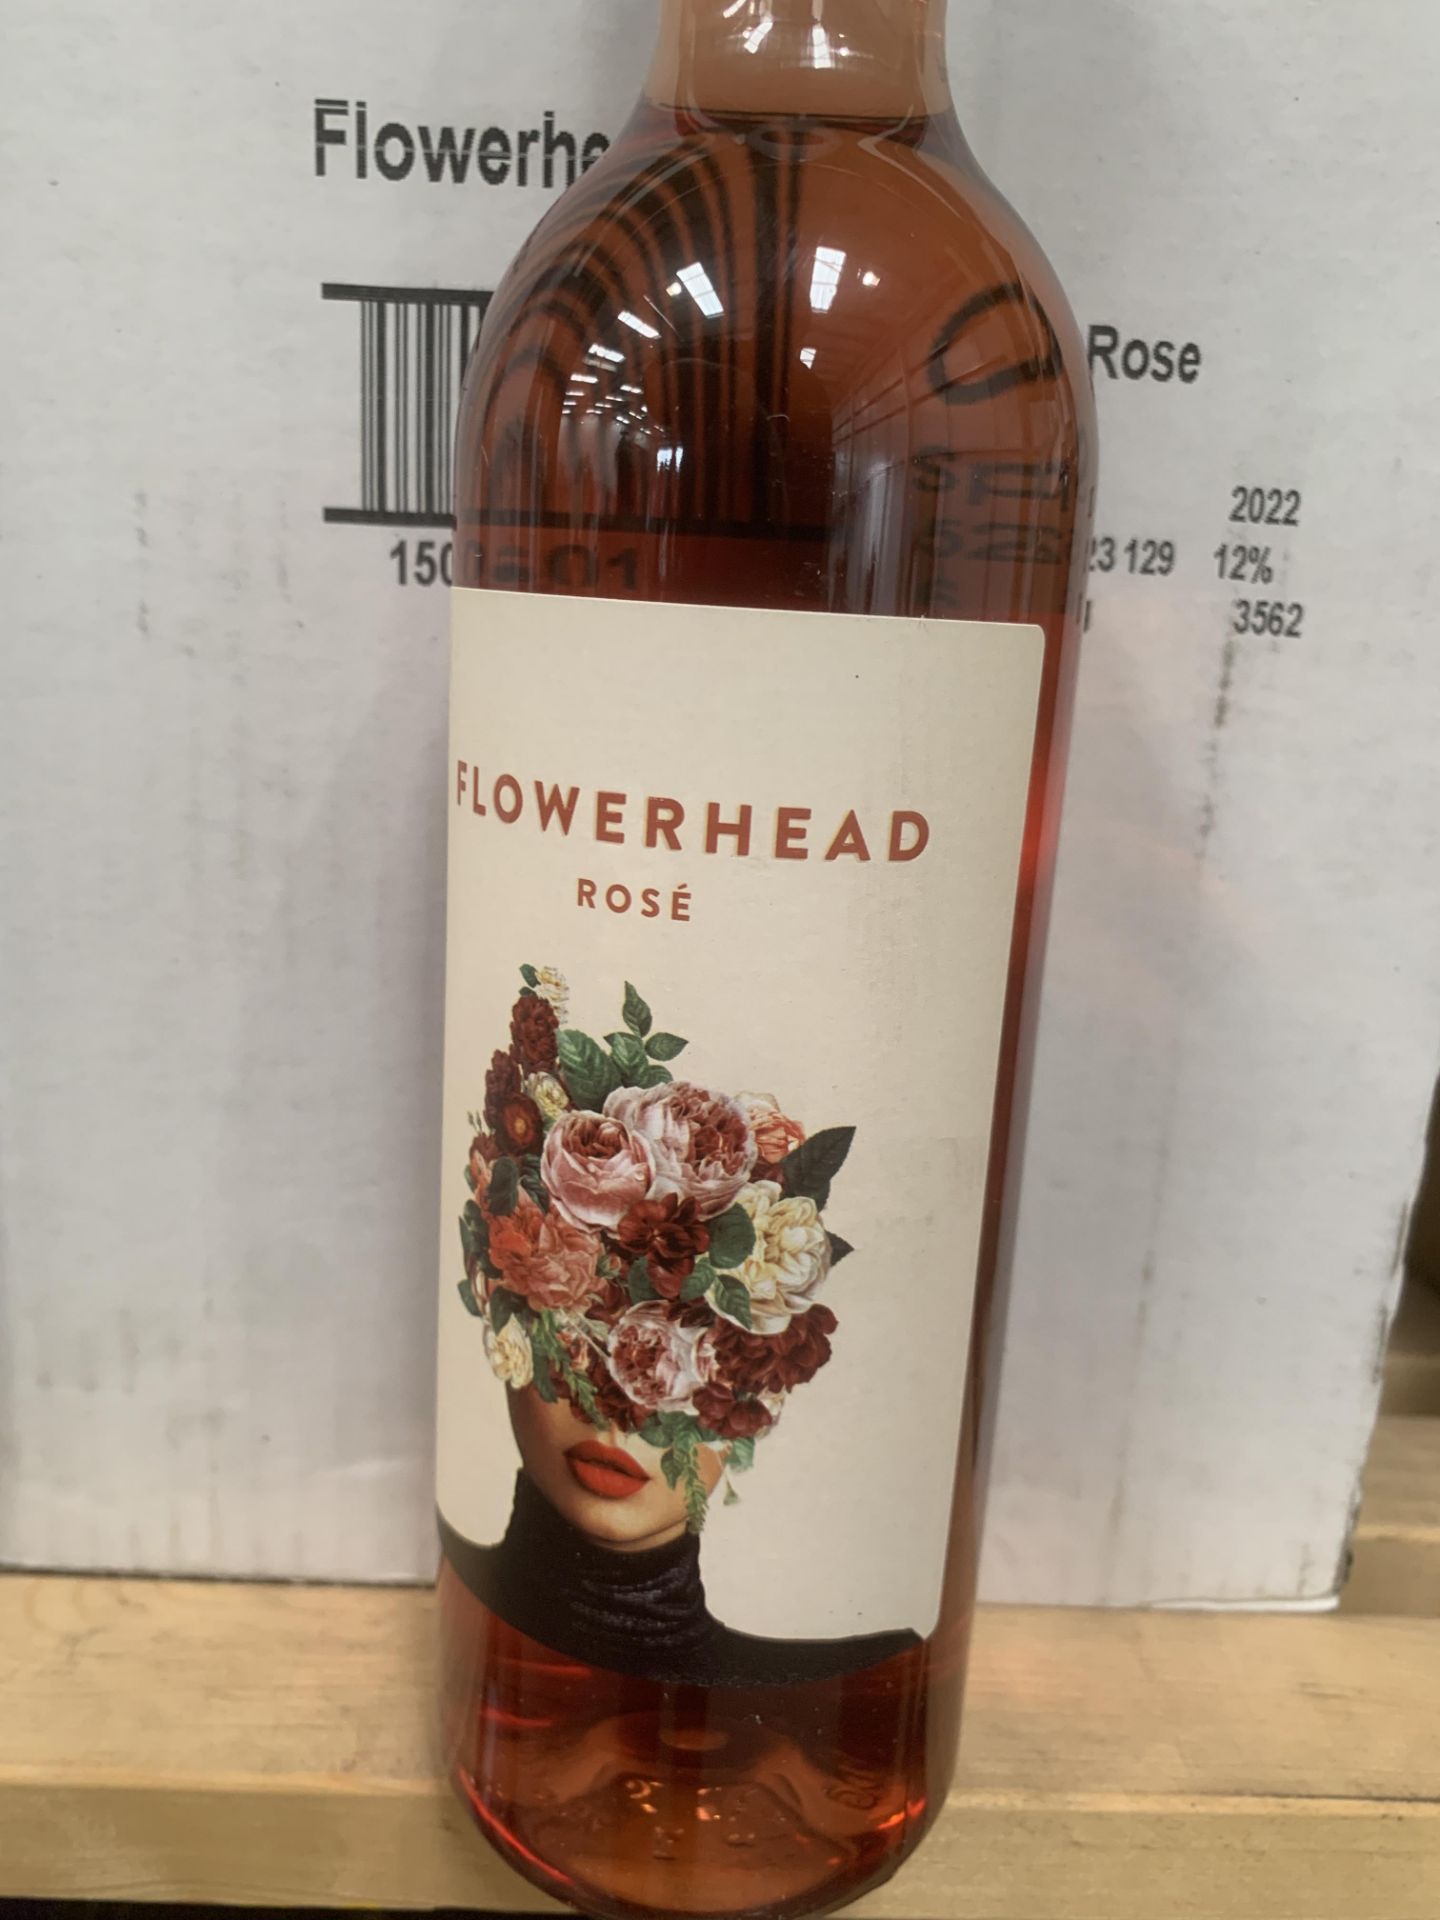 36x Bottles of Flower Head 'Garnacha Rose' 2022 - 12%, 75cl - Bild 3 aus 3